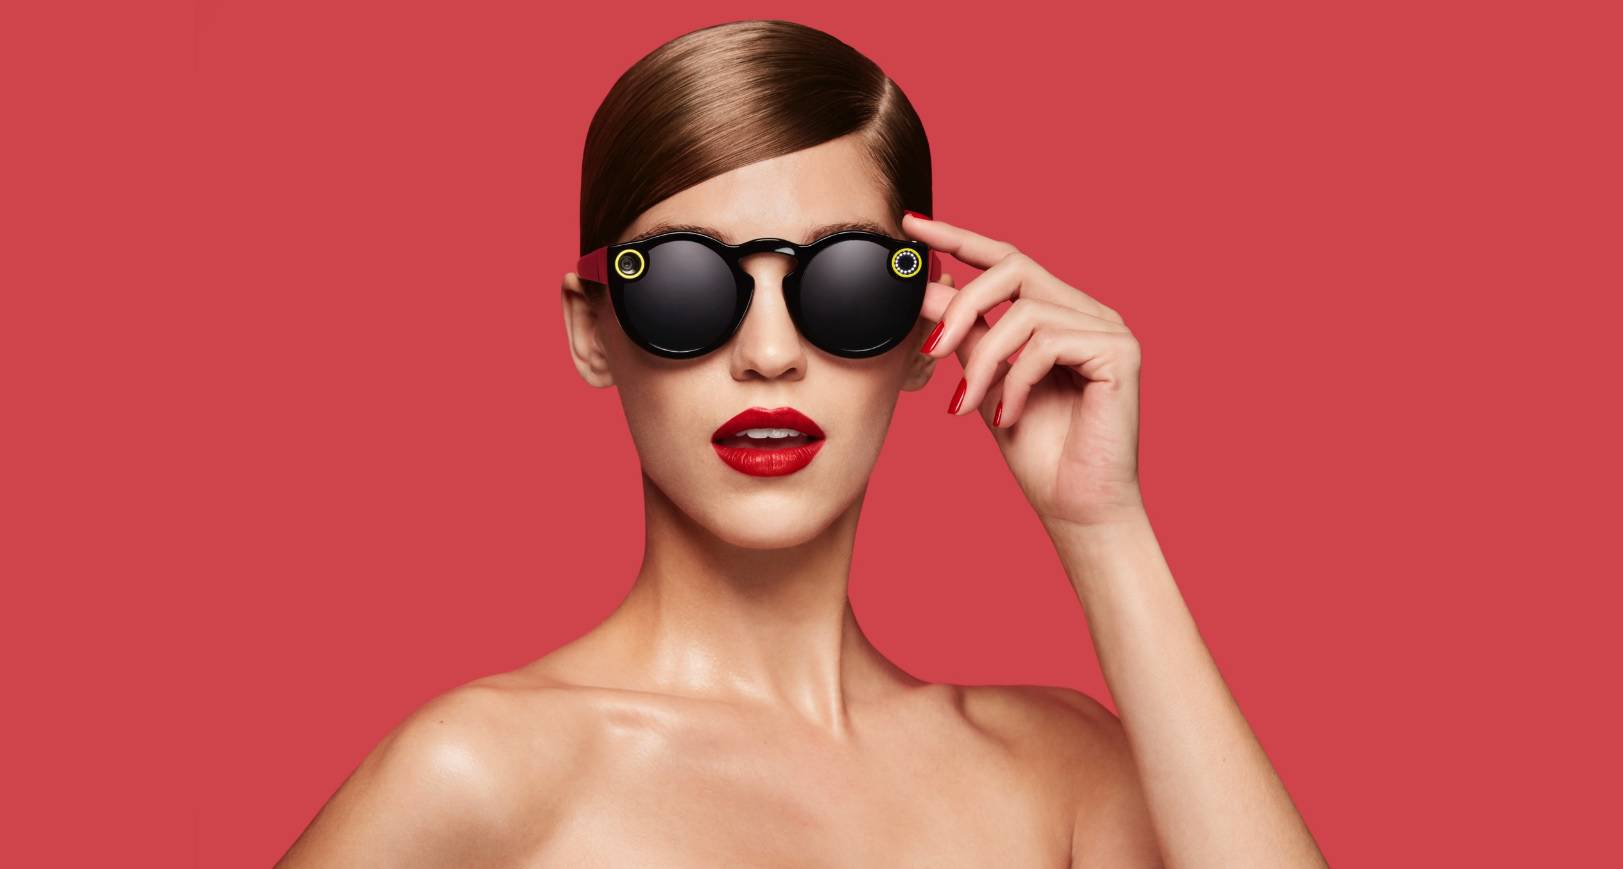 Snapchat sada ima sunčane naočale koje će snimati video